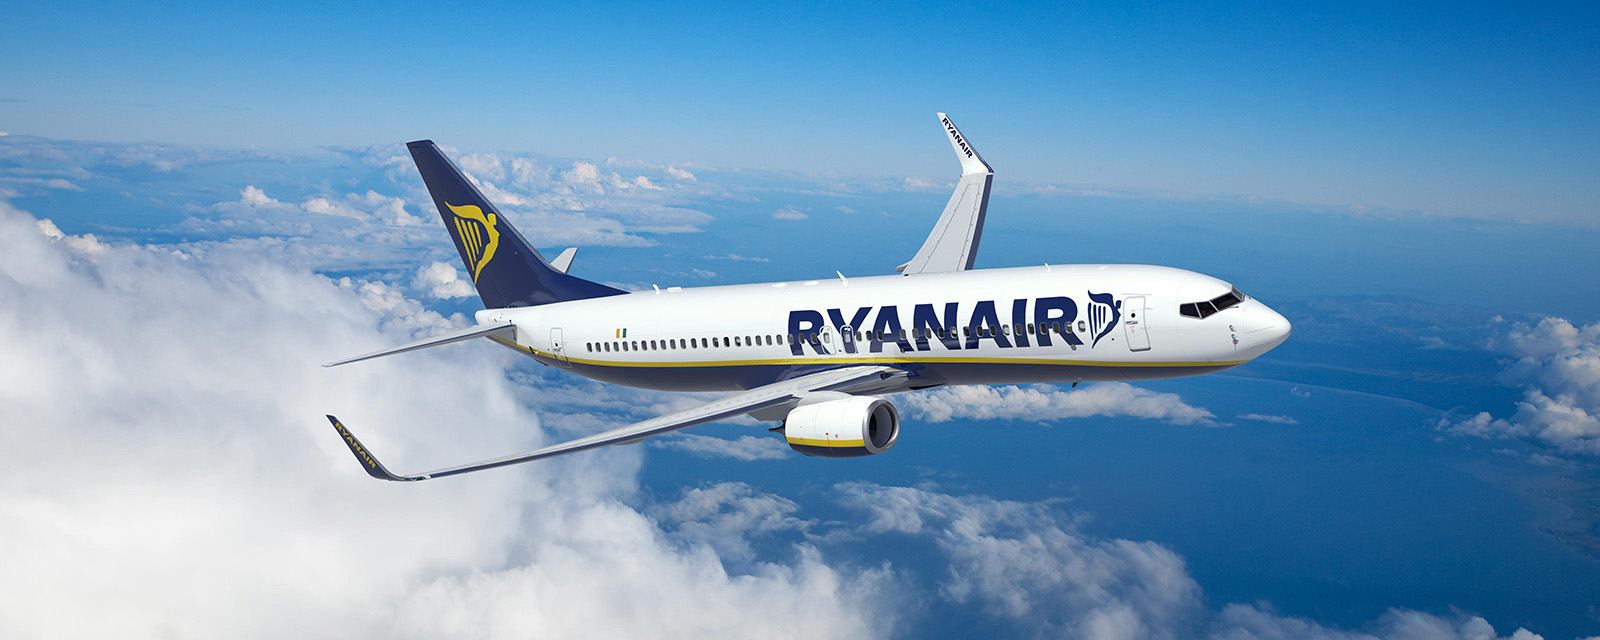 Ryanair Careers